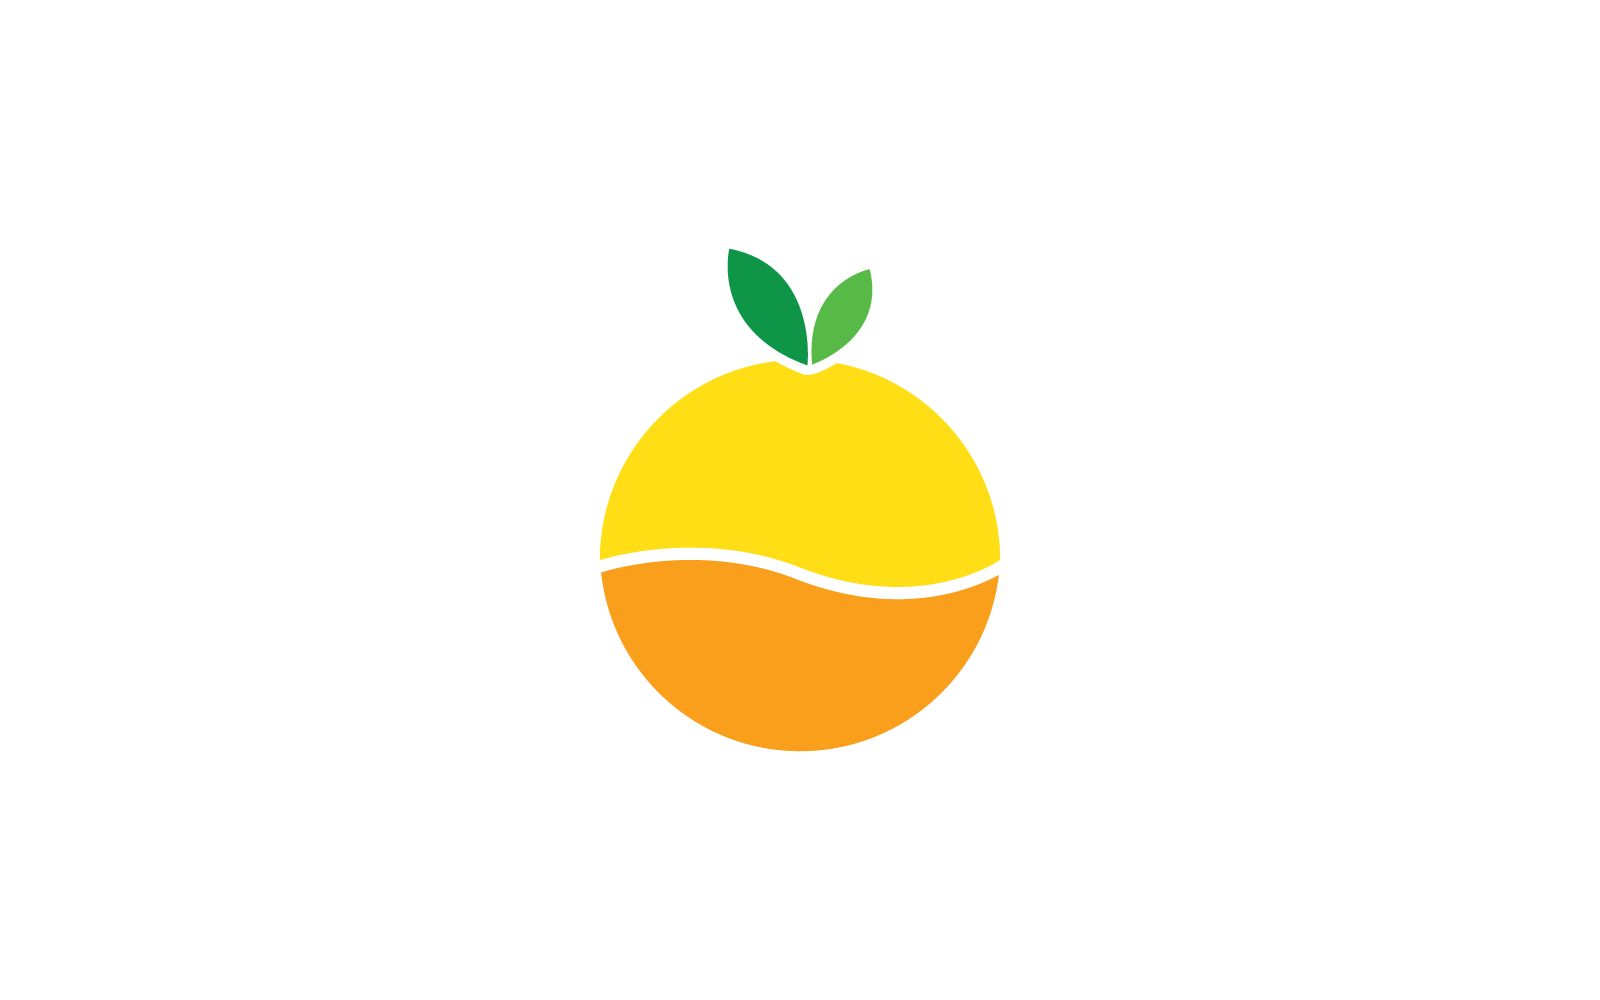 Turuncu meyve logosu Vektör düz tasarımı